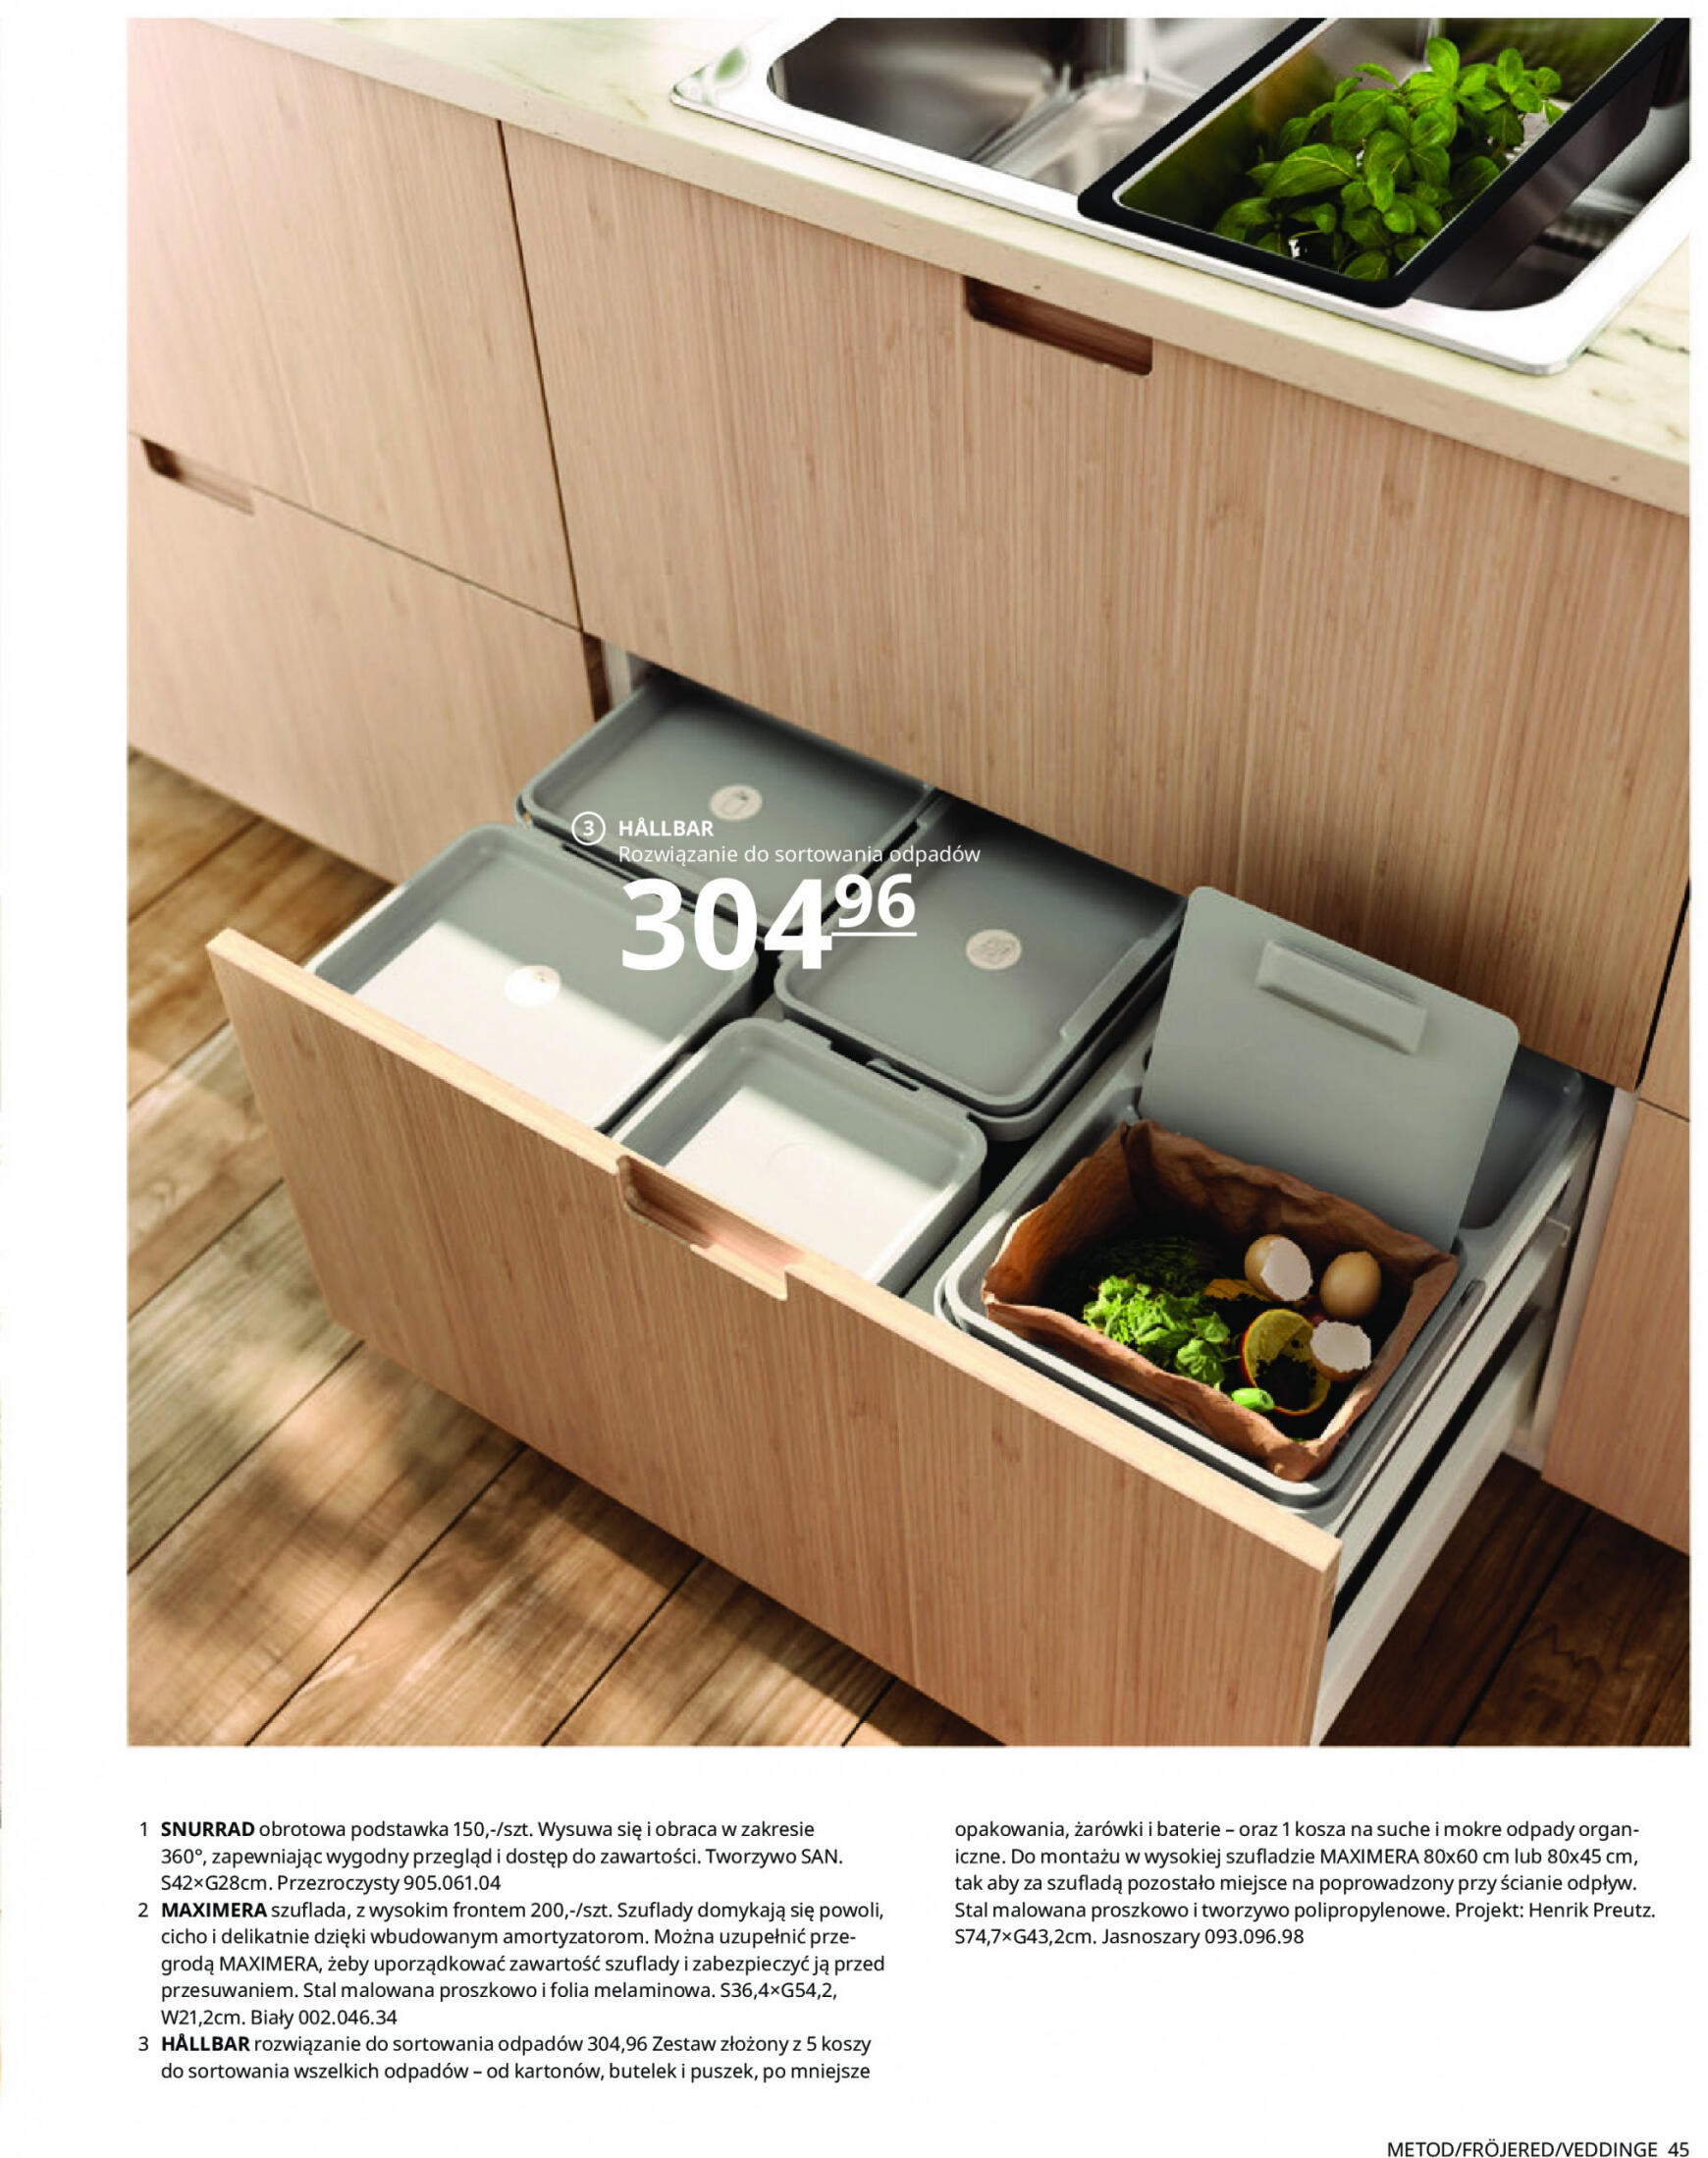 ikea - IKEA - Kuchnie - page: 45